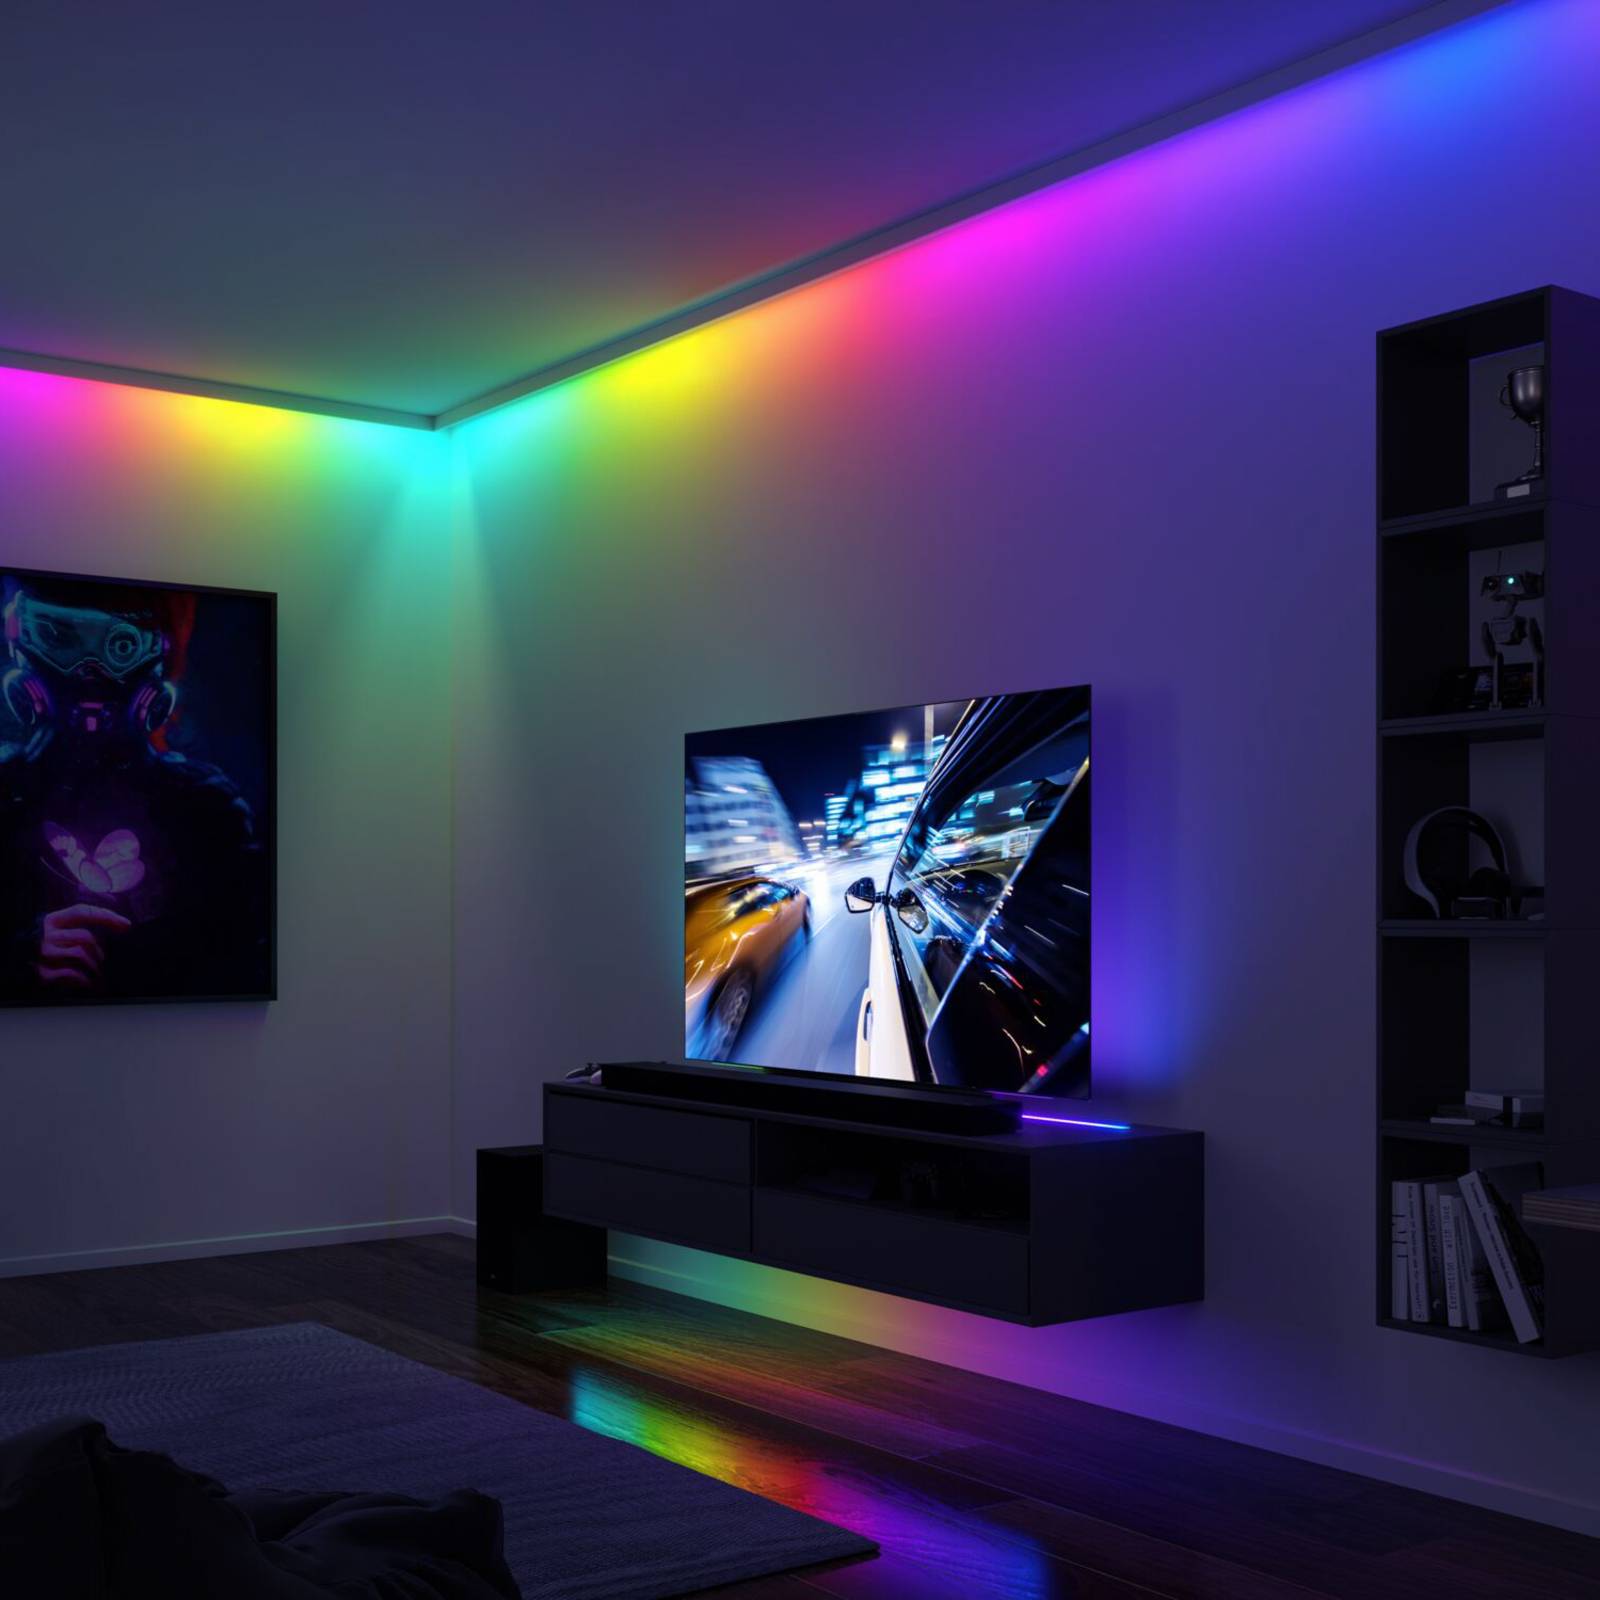 Paulmann EntertainLED LED-Strip, RGB, Set, 3m günstig online kaufen